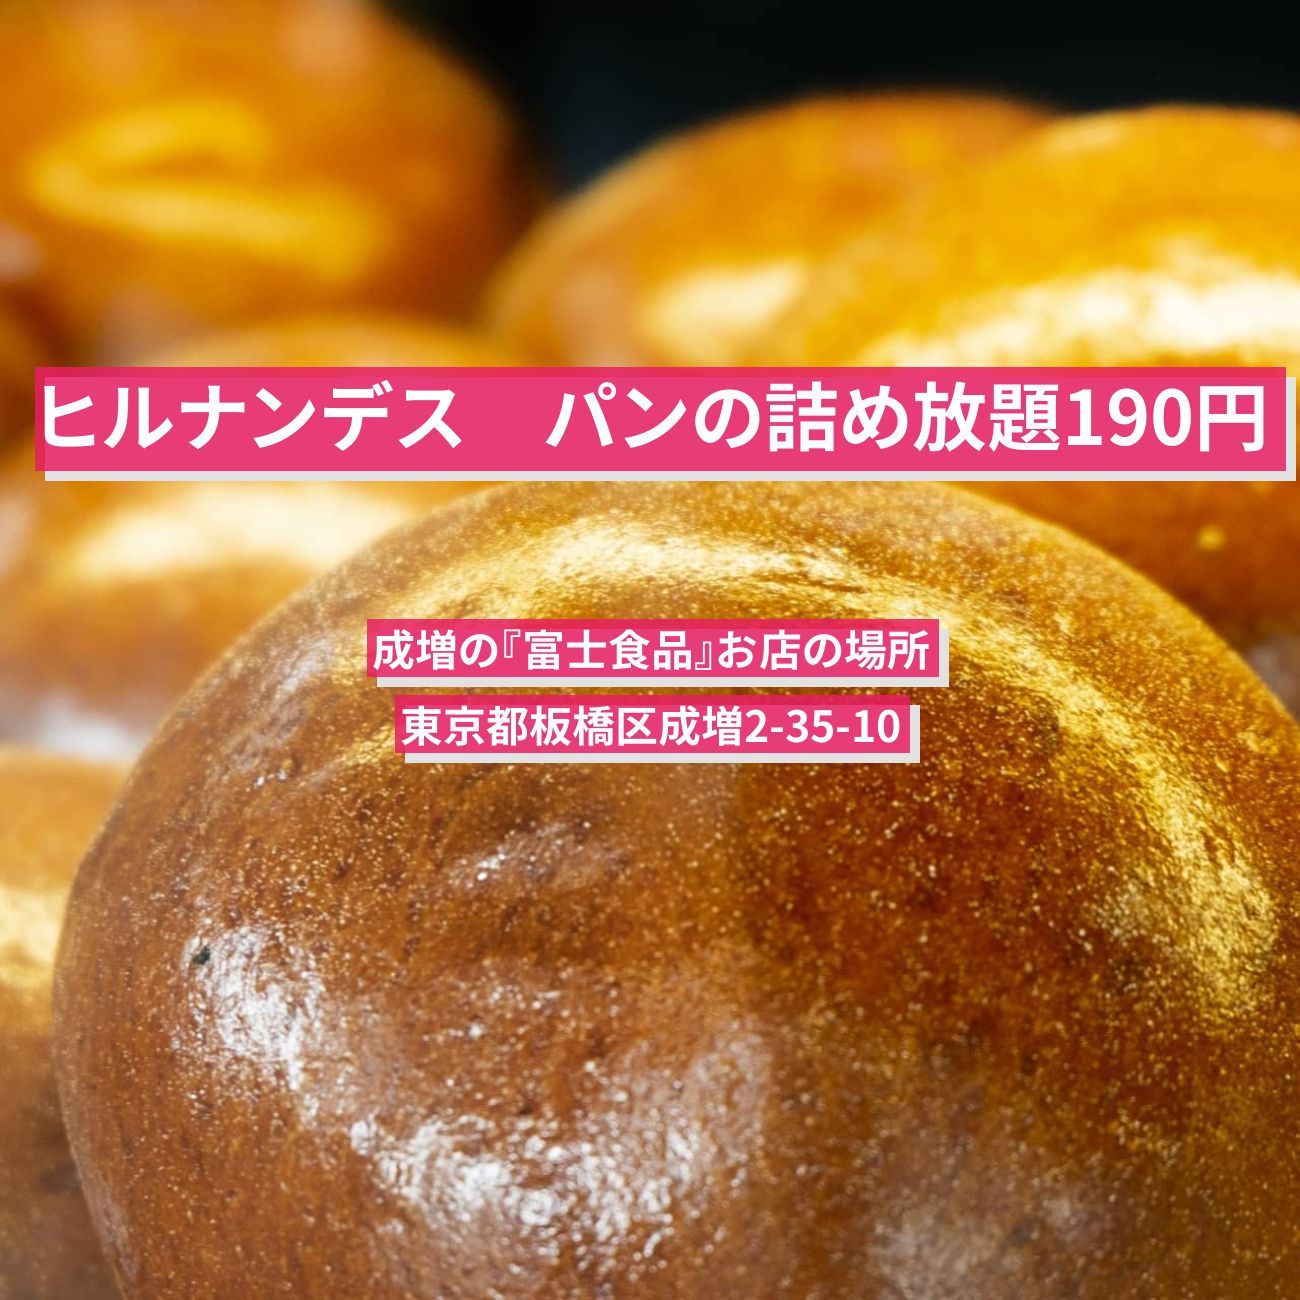 【ヒルナンデス】パンの詰め放題190円『富士食品』成増のお店の場所